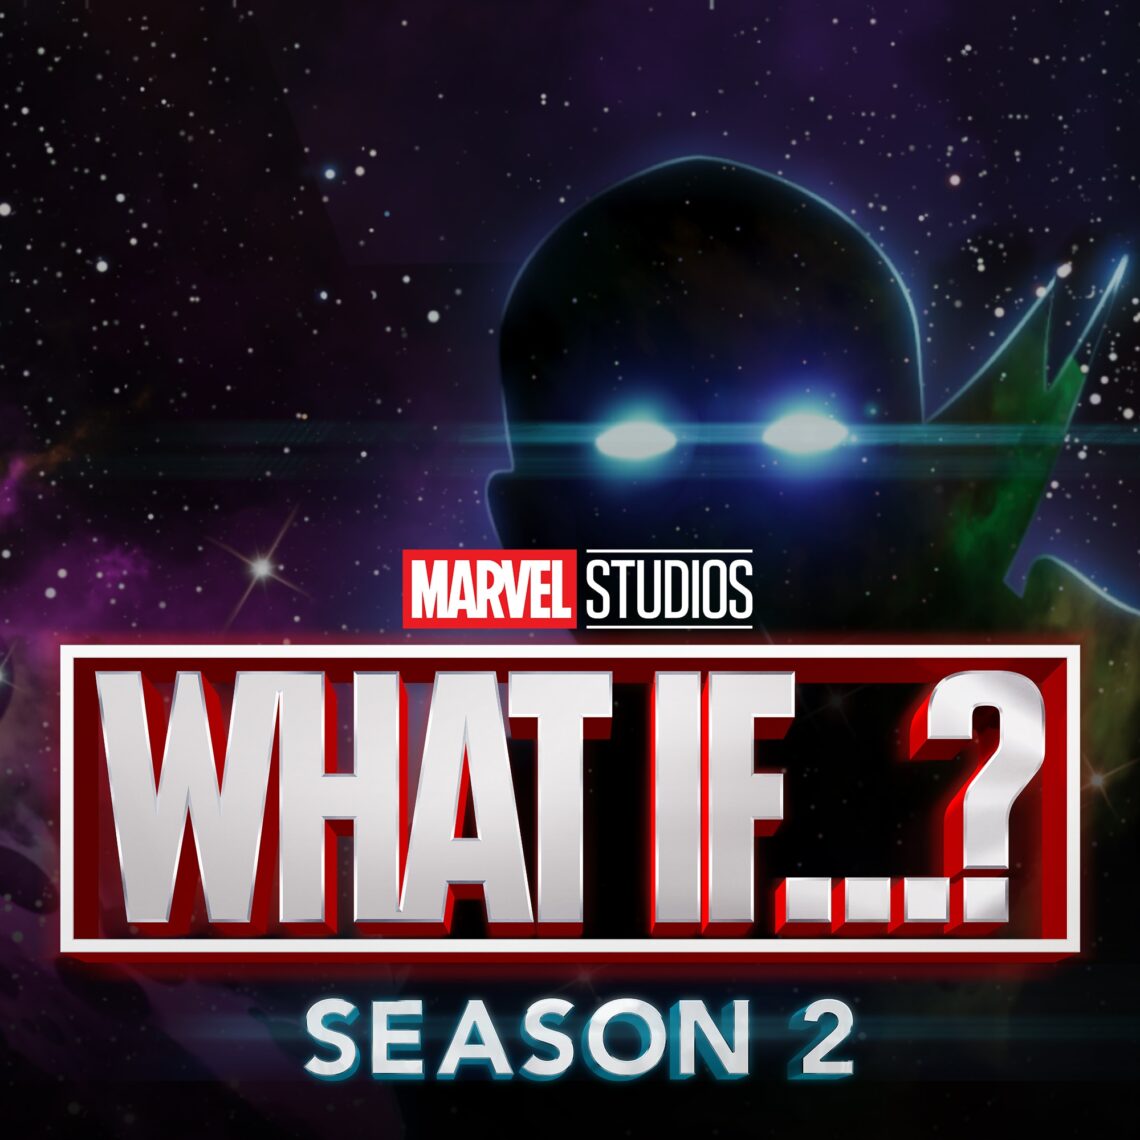 Marvel divulga logos oficiais de suas novas séries no Disney+